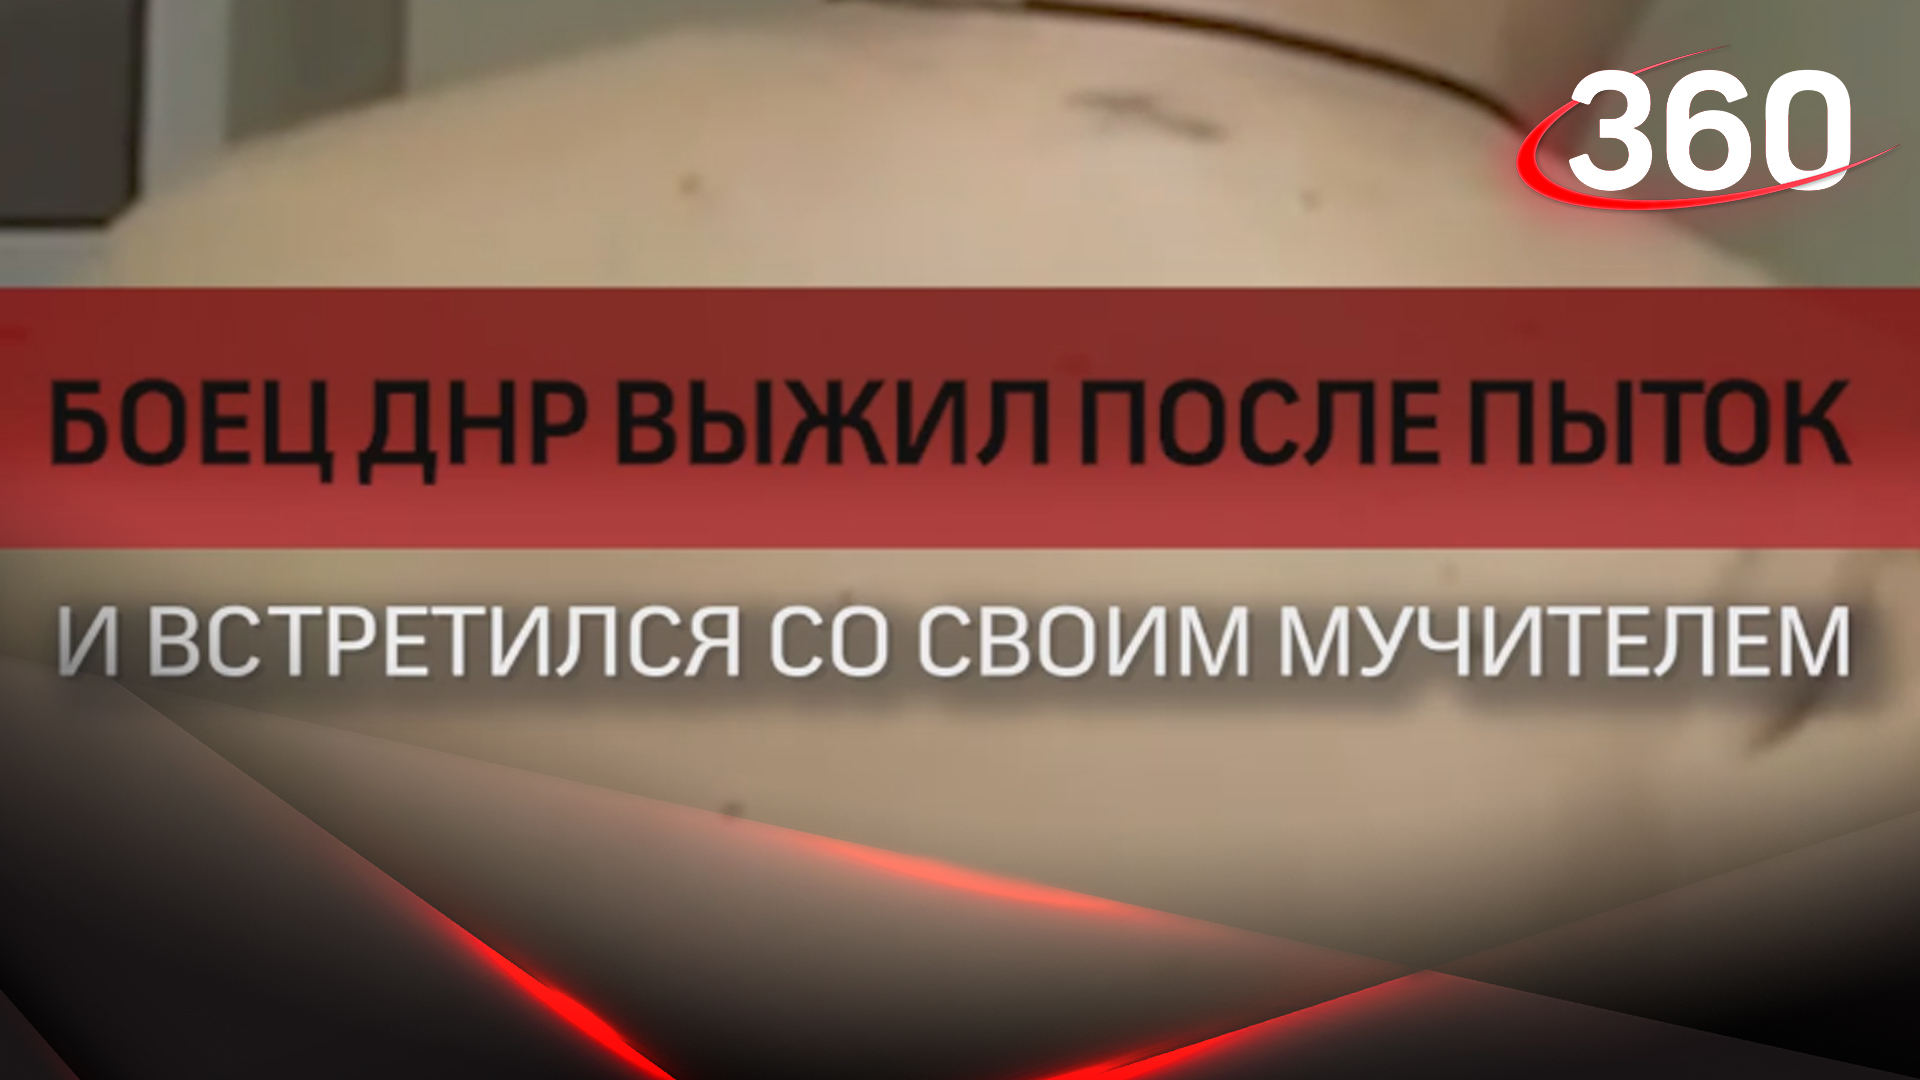 Боец ДНР выжил после пыток и встретился со своим мучителем